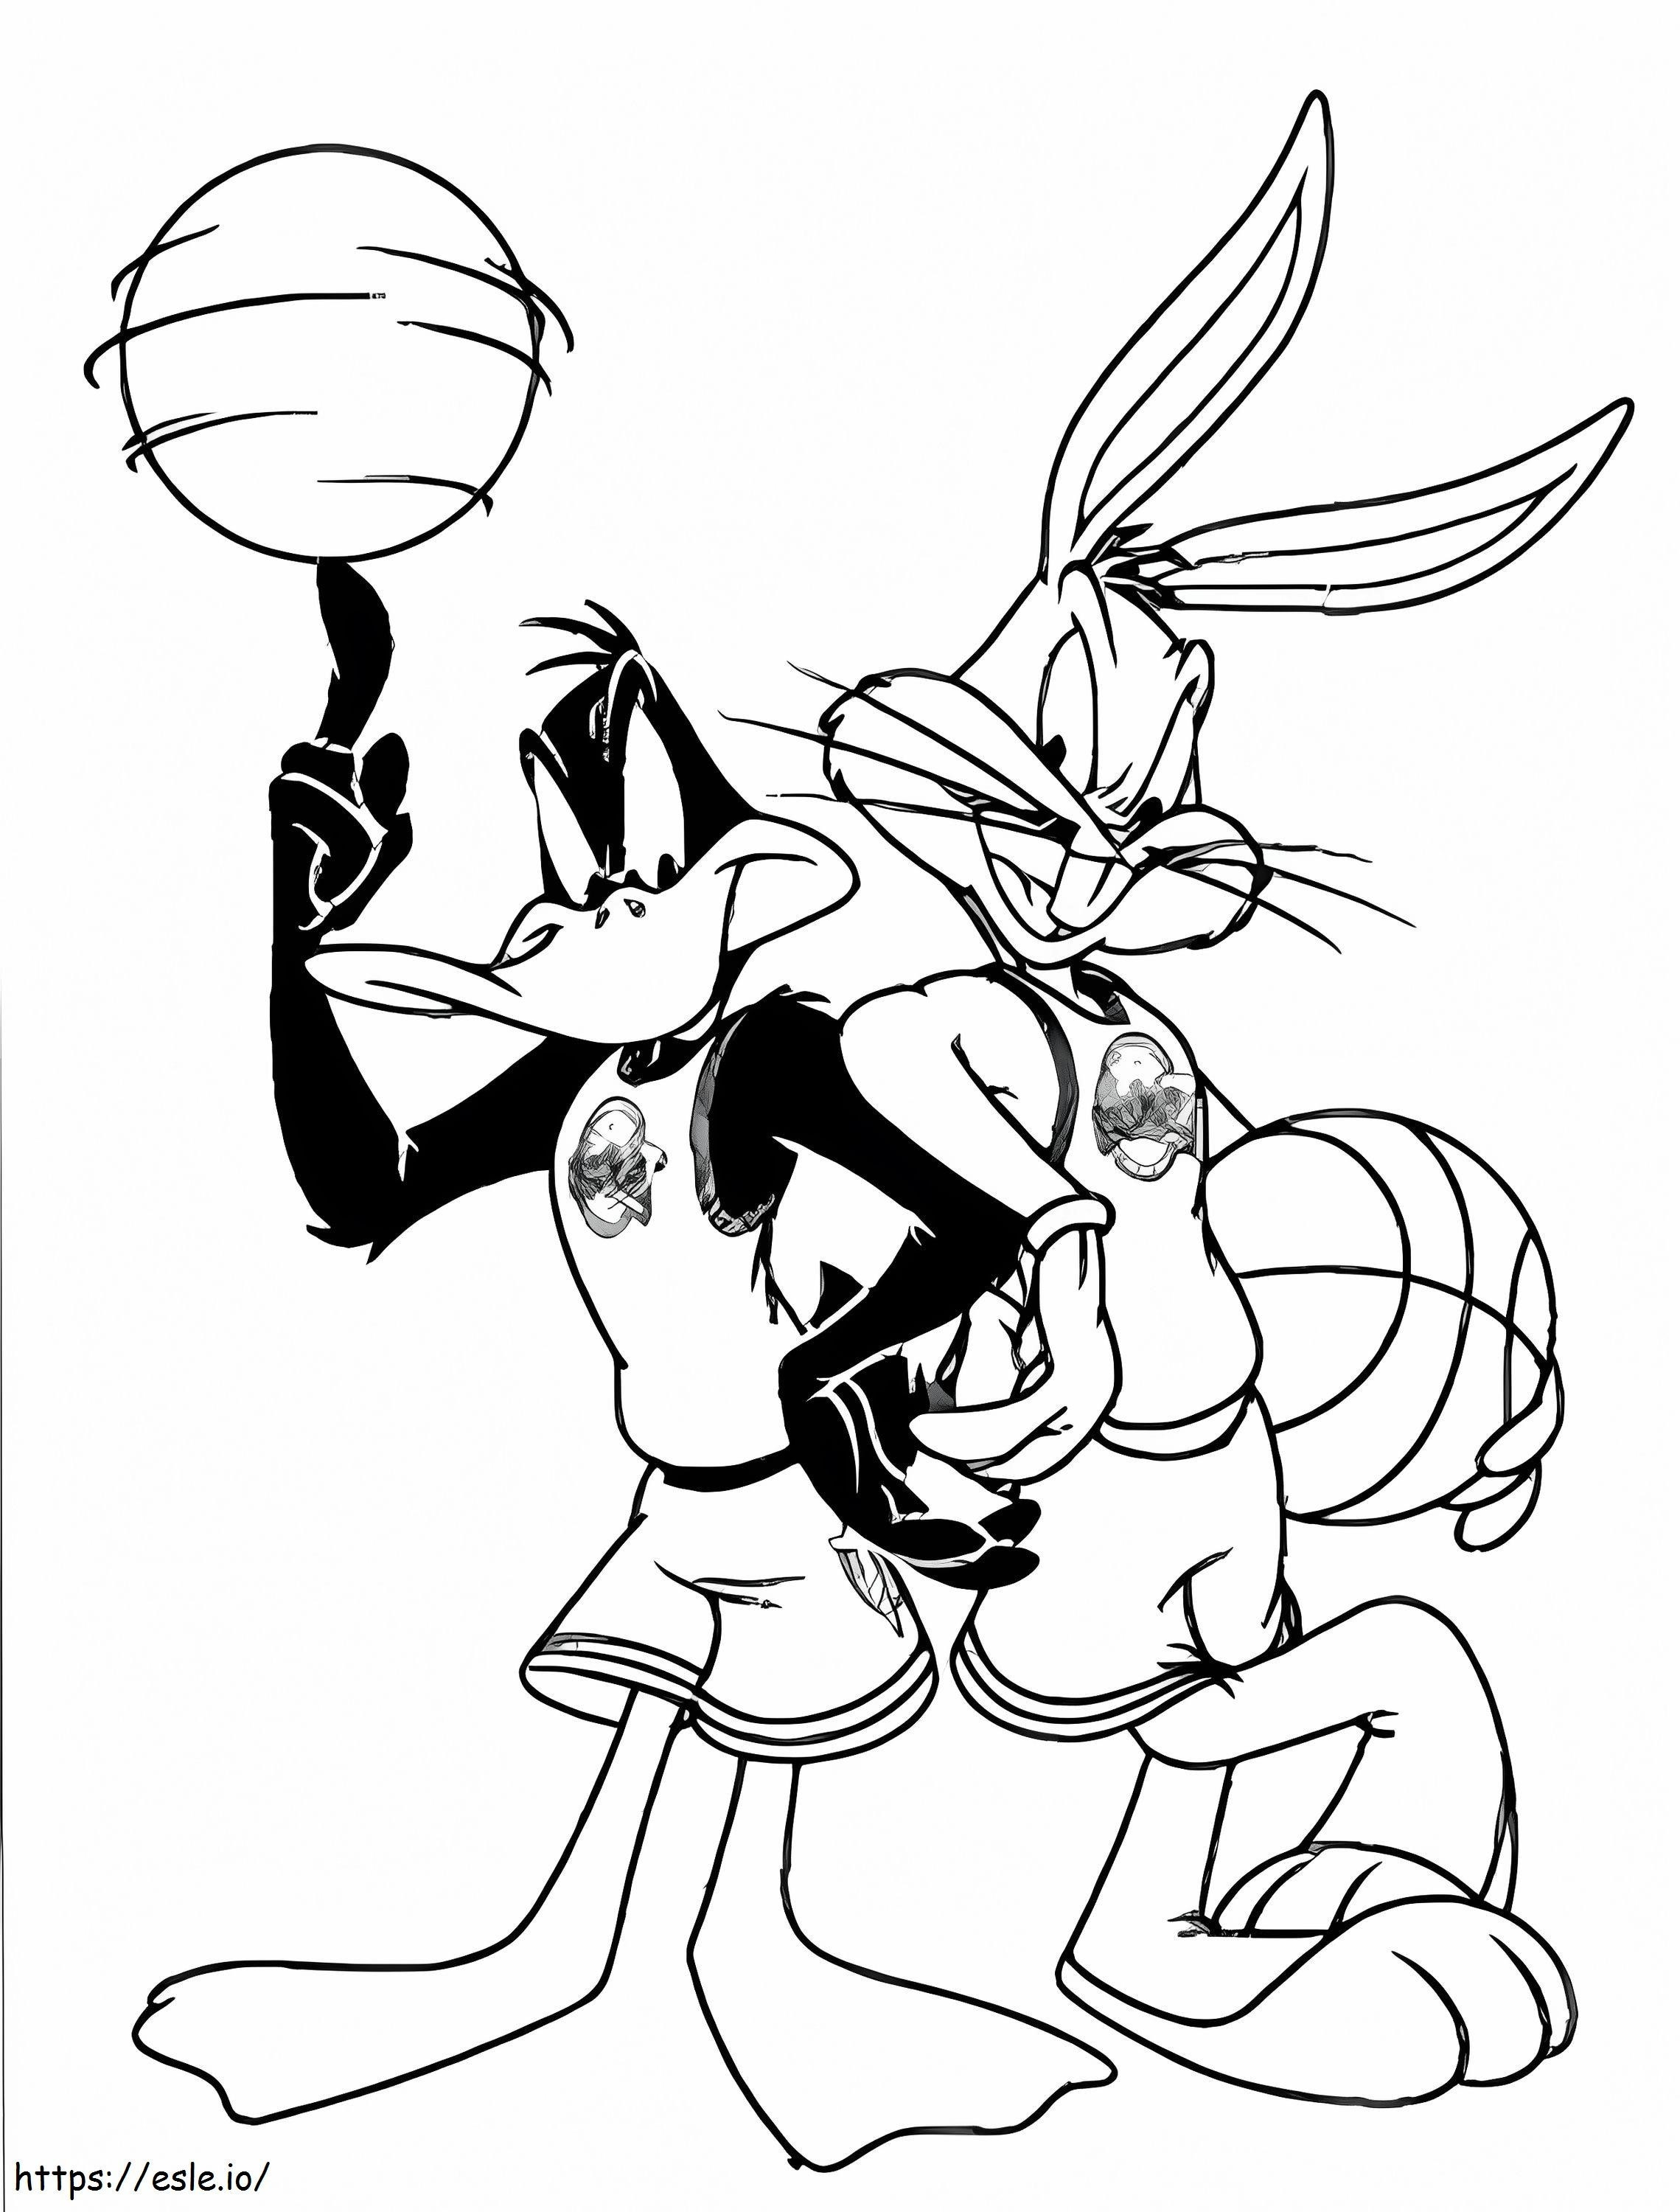 Bugs Bunny e Daffy Duck tenendo le palle da colorare